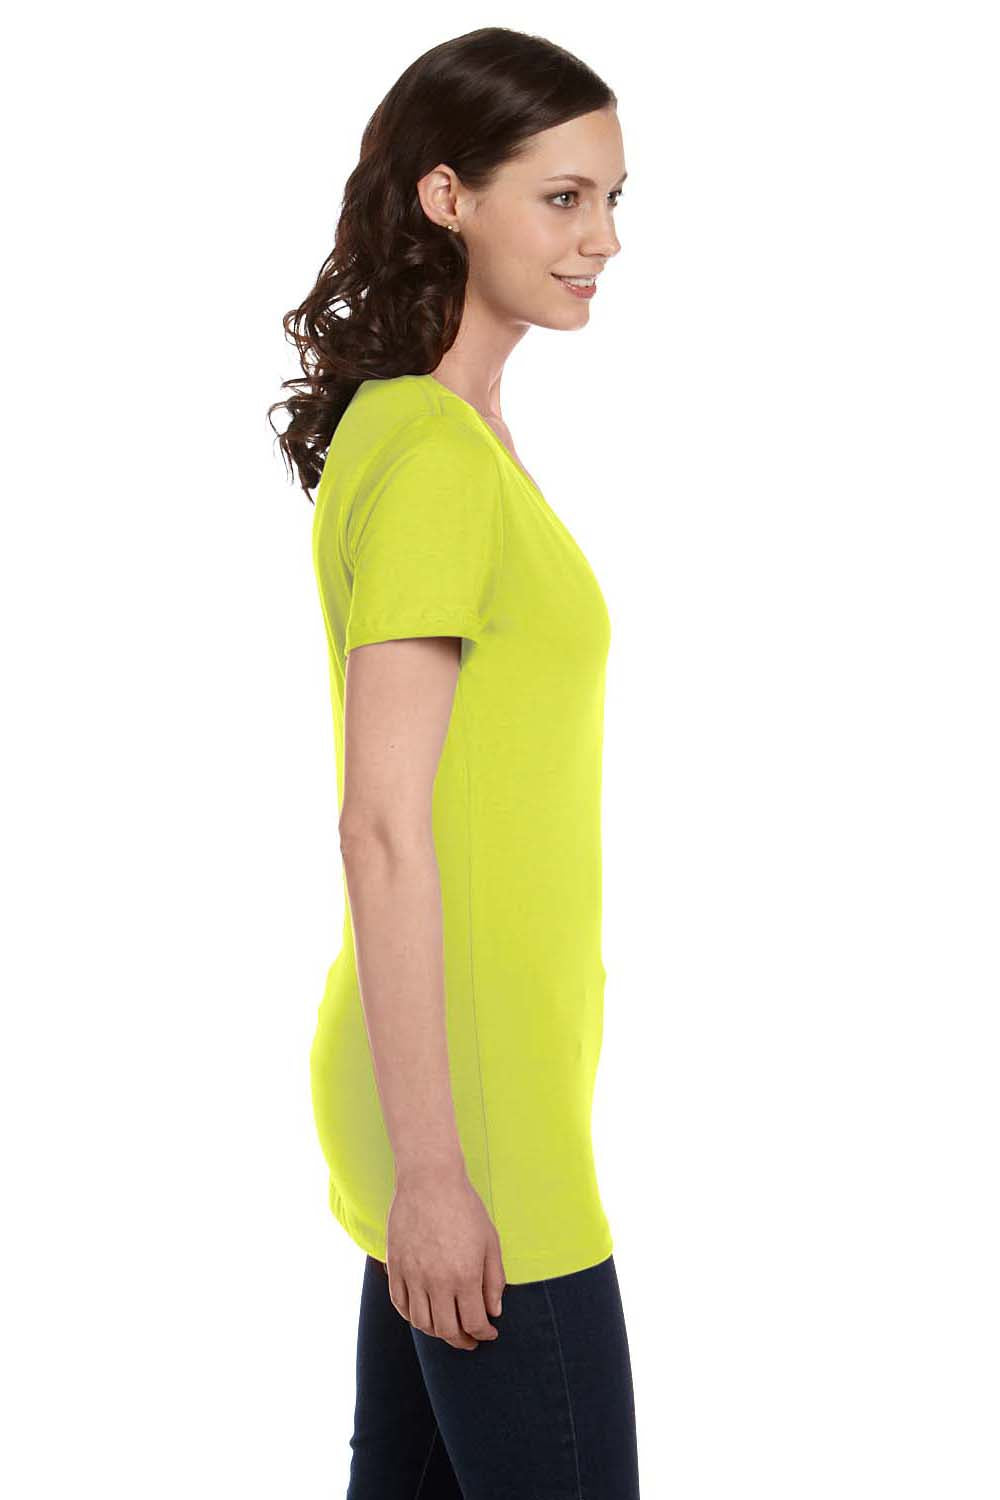 Bella + Canvas B6035 Womens Jersey Short Sleeve Deep V-Neck T-Shirt Neon Yellow Side